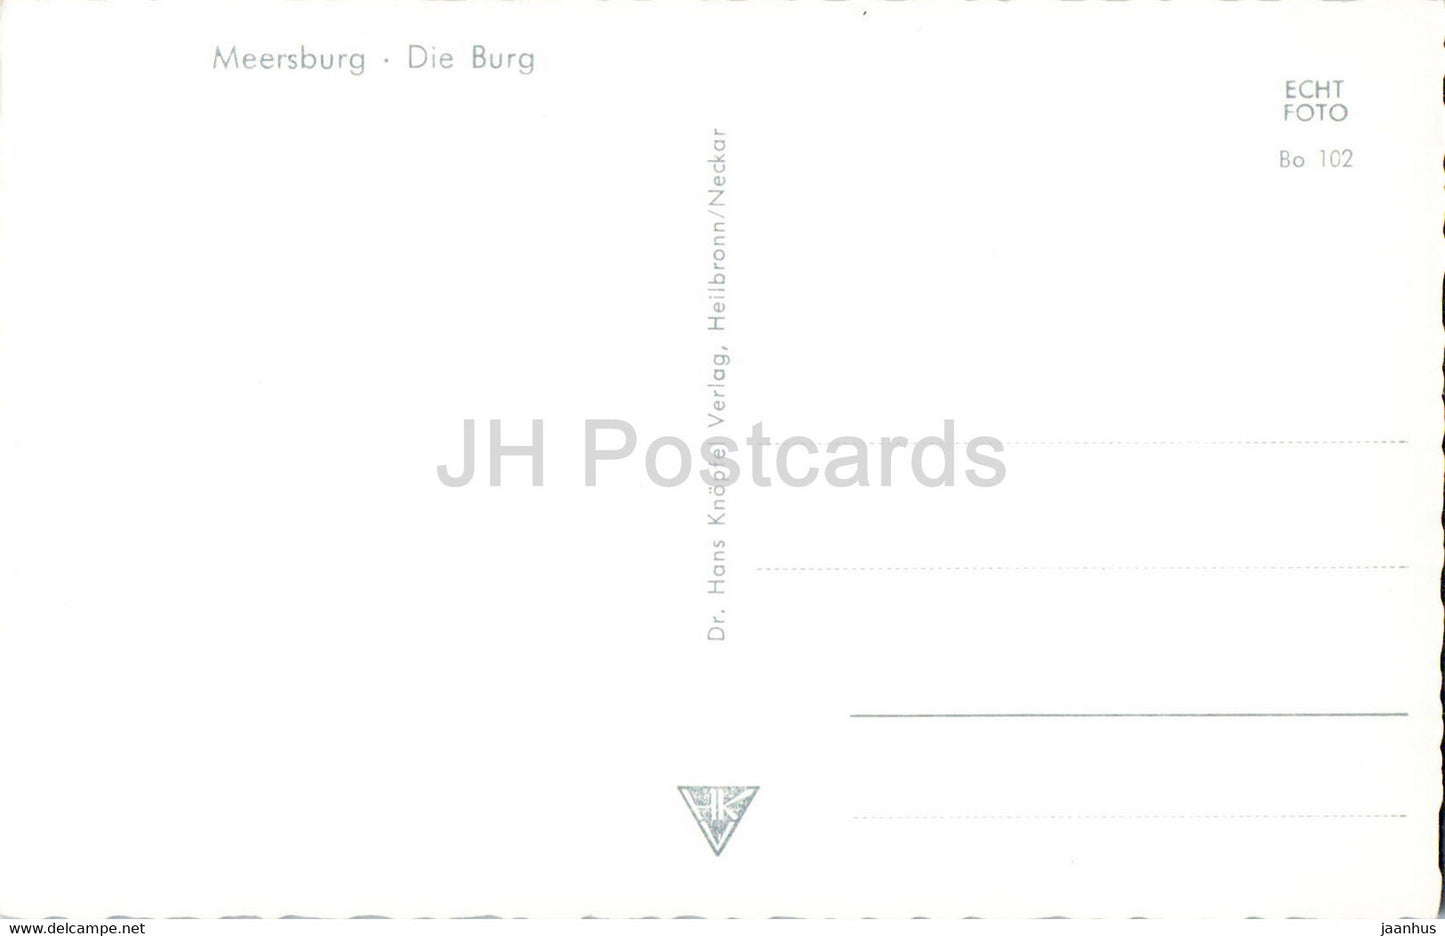 Meersburg - Die Burg - château - carte postale ancienne - Allemagne - inutilisée